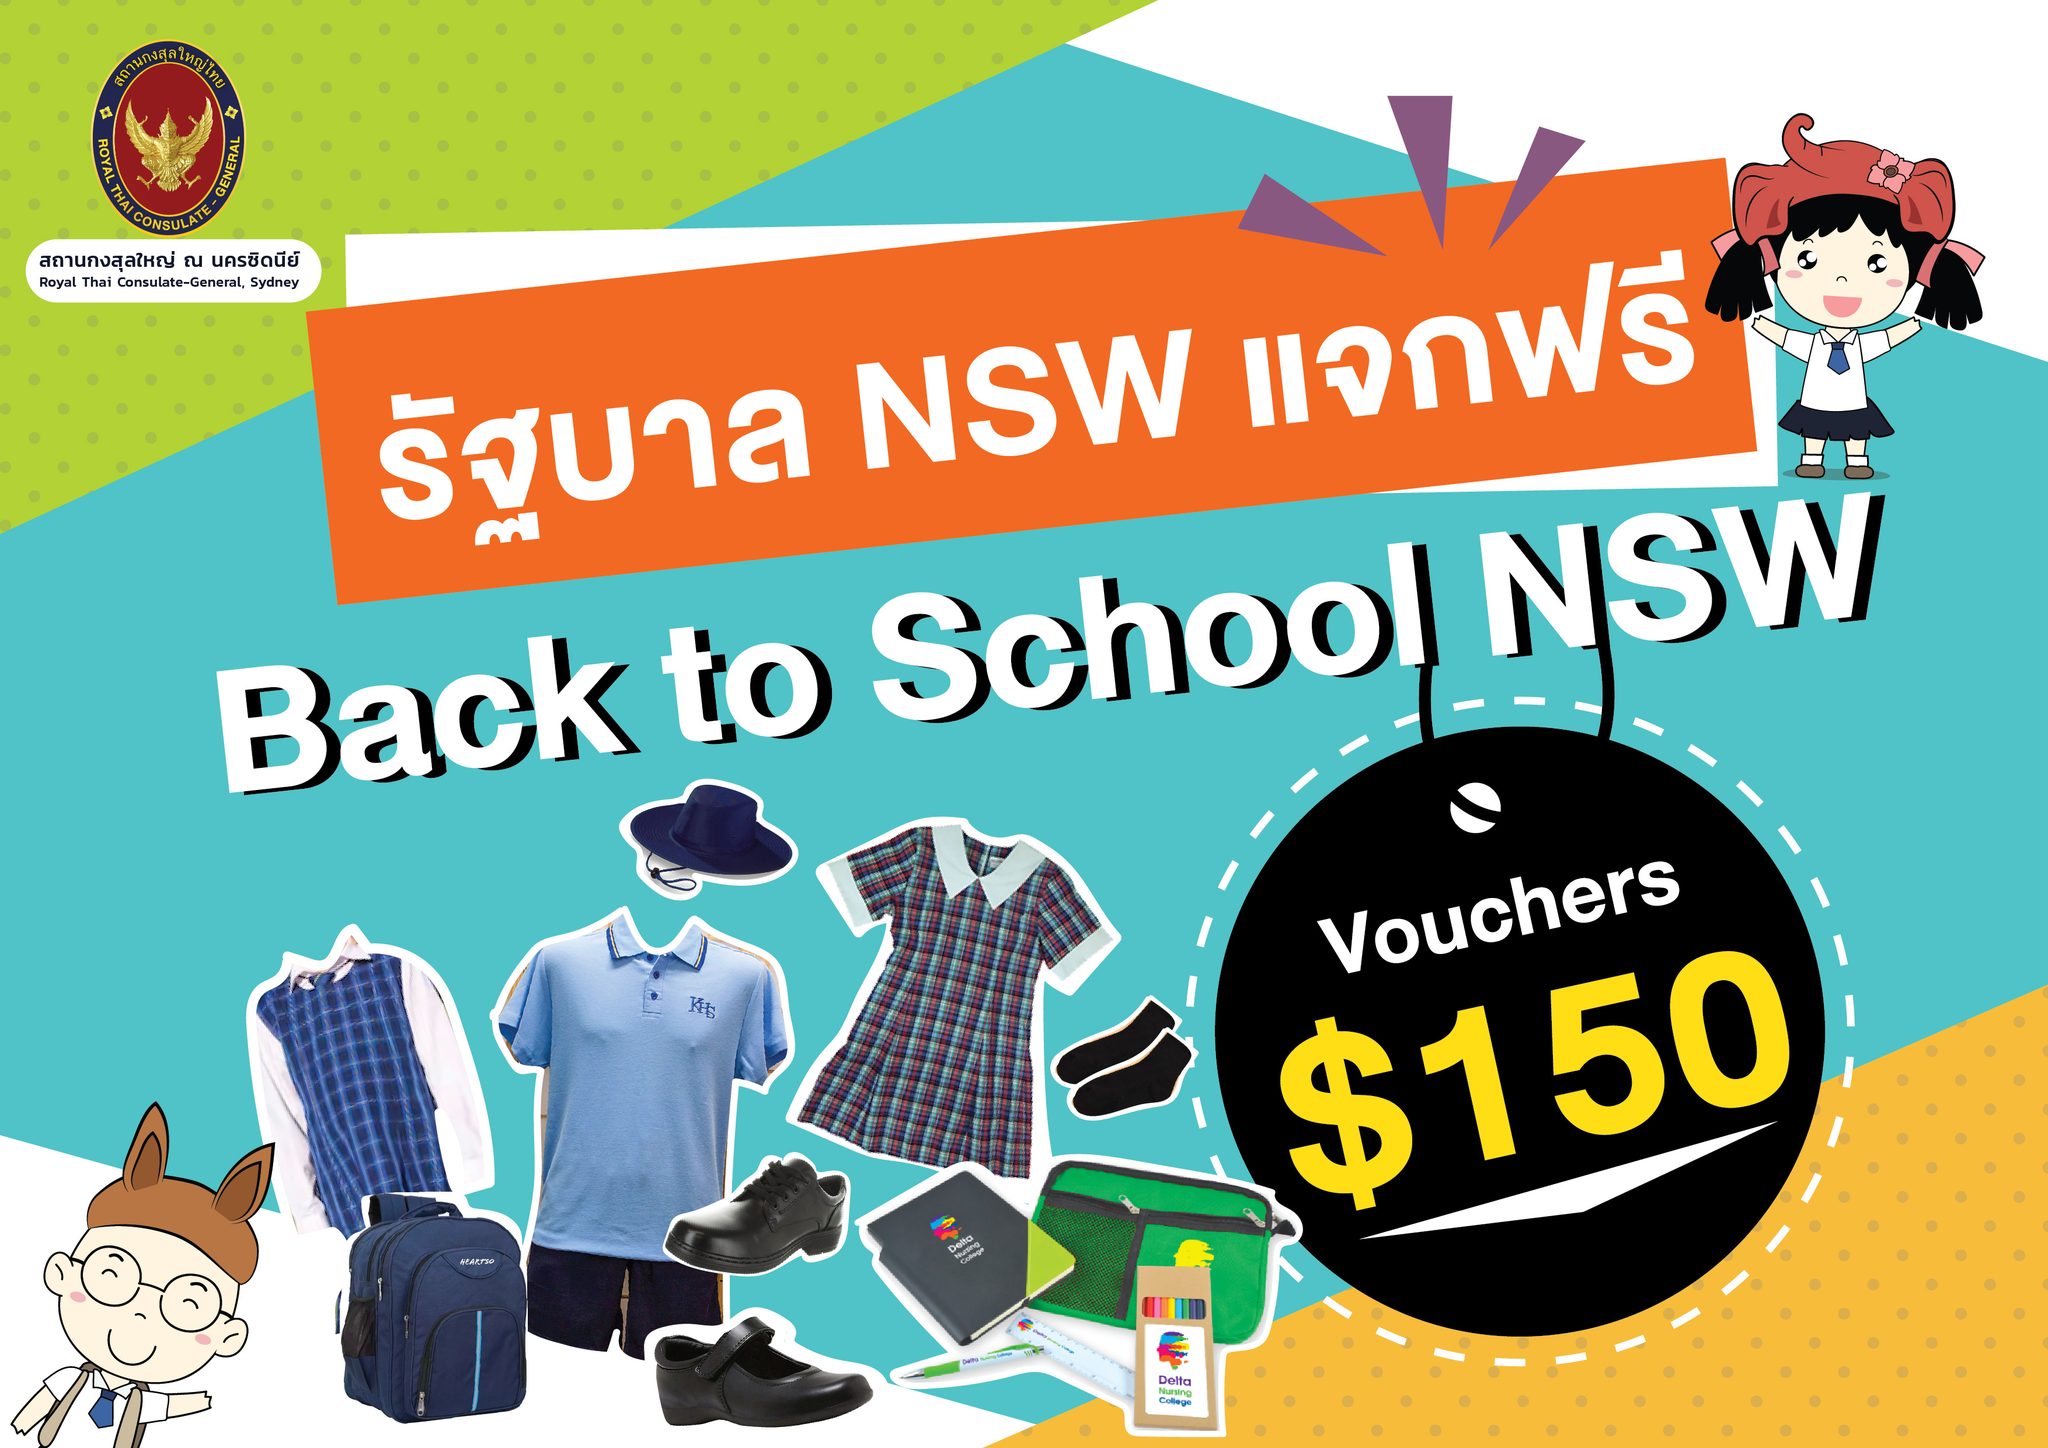 รัฐบาล NSW แจกฟรี Back to School NSW Vouchers 150 สถานกงสุลใหญ่ ณ